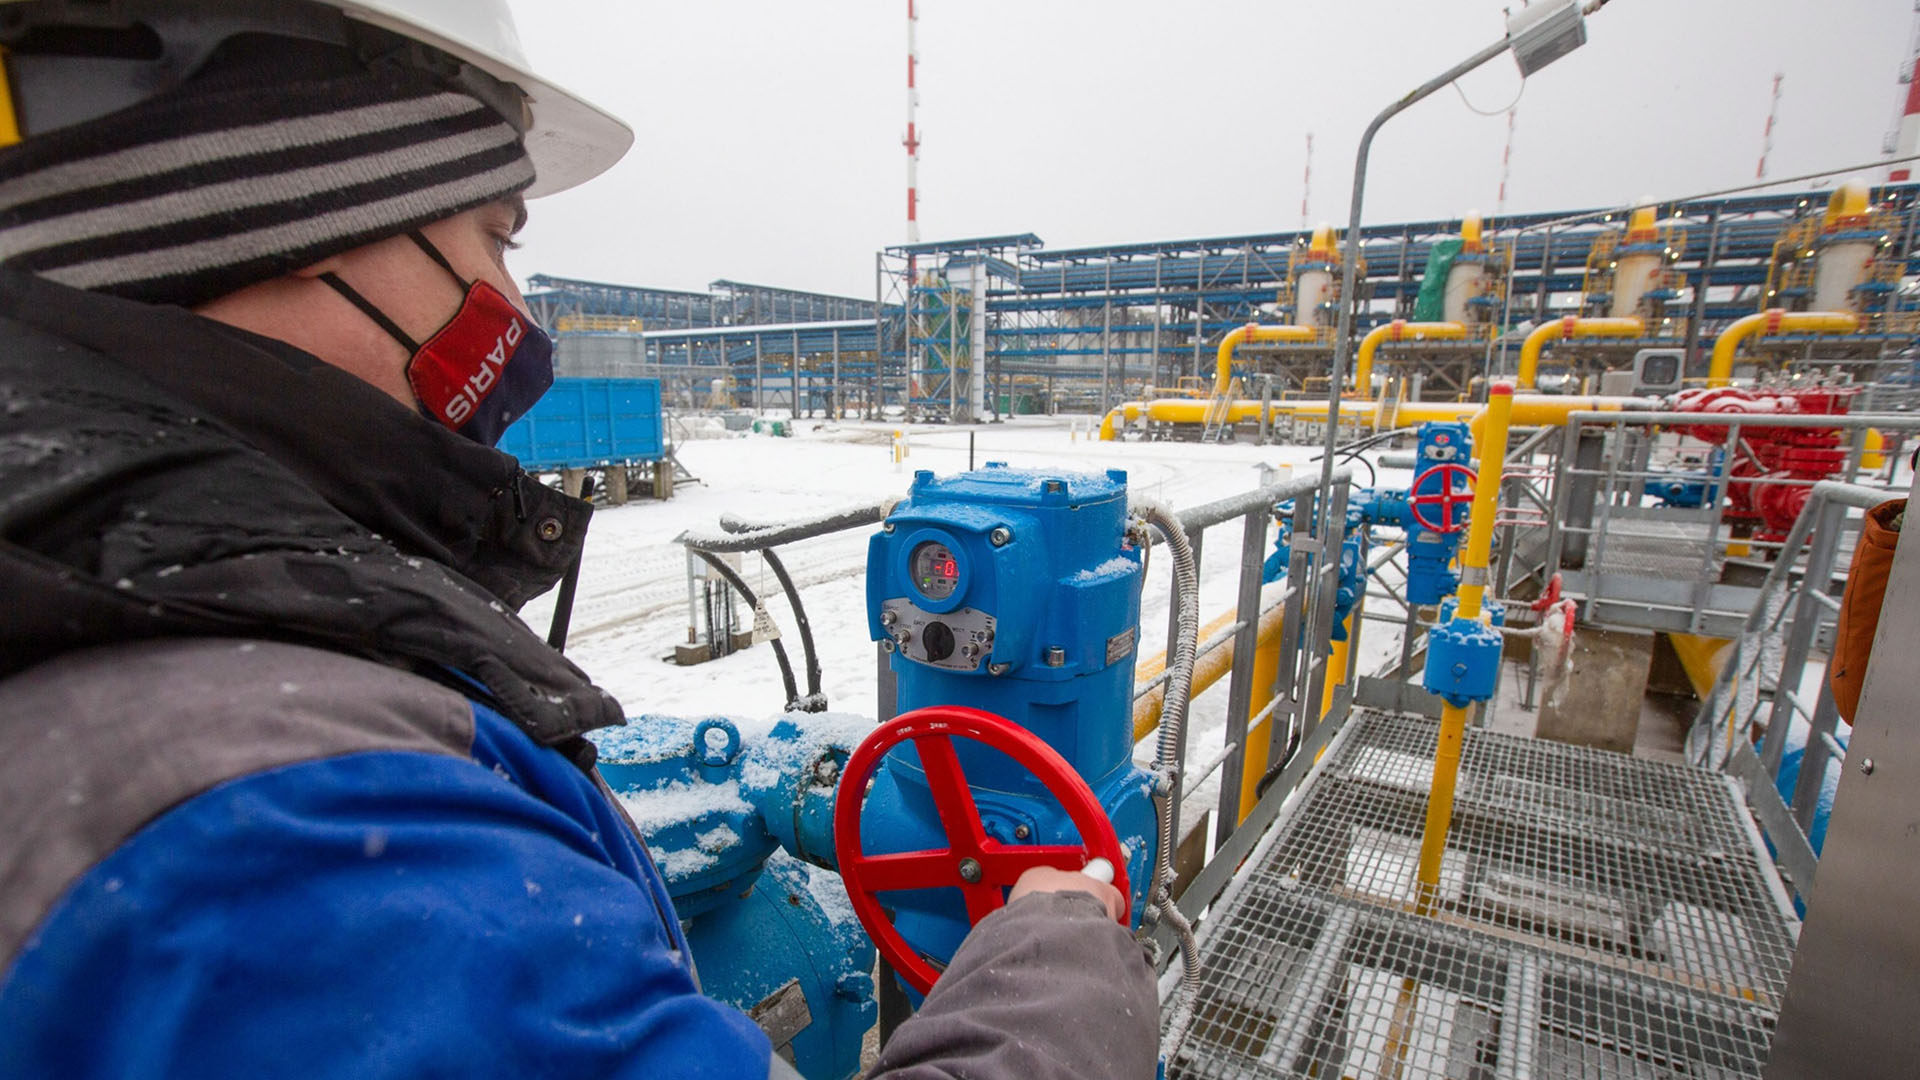 Un trabajador ajusta una válvula de tubería en la estación compresora Gazprom PJSC Slavyanskaya, el punto de partida del gasoducto Nord Stream 2, en Ust-Luga, Rusia (Andrey Rudakov/Bloomberg)